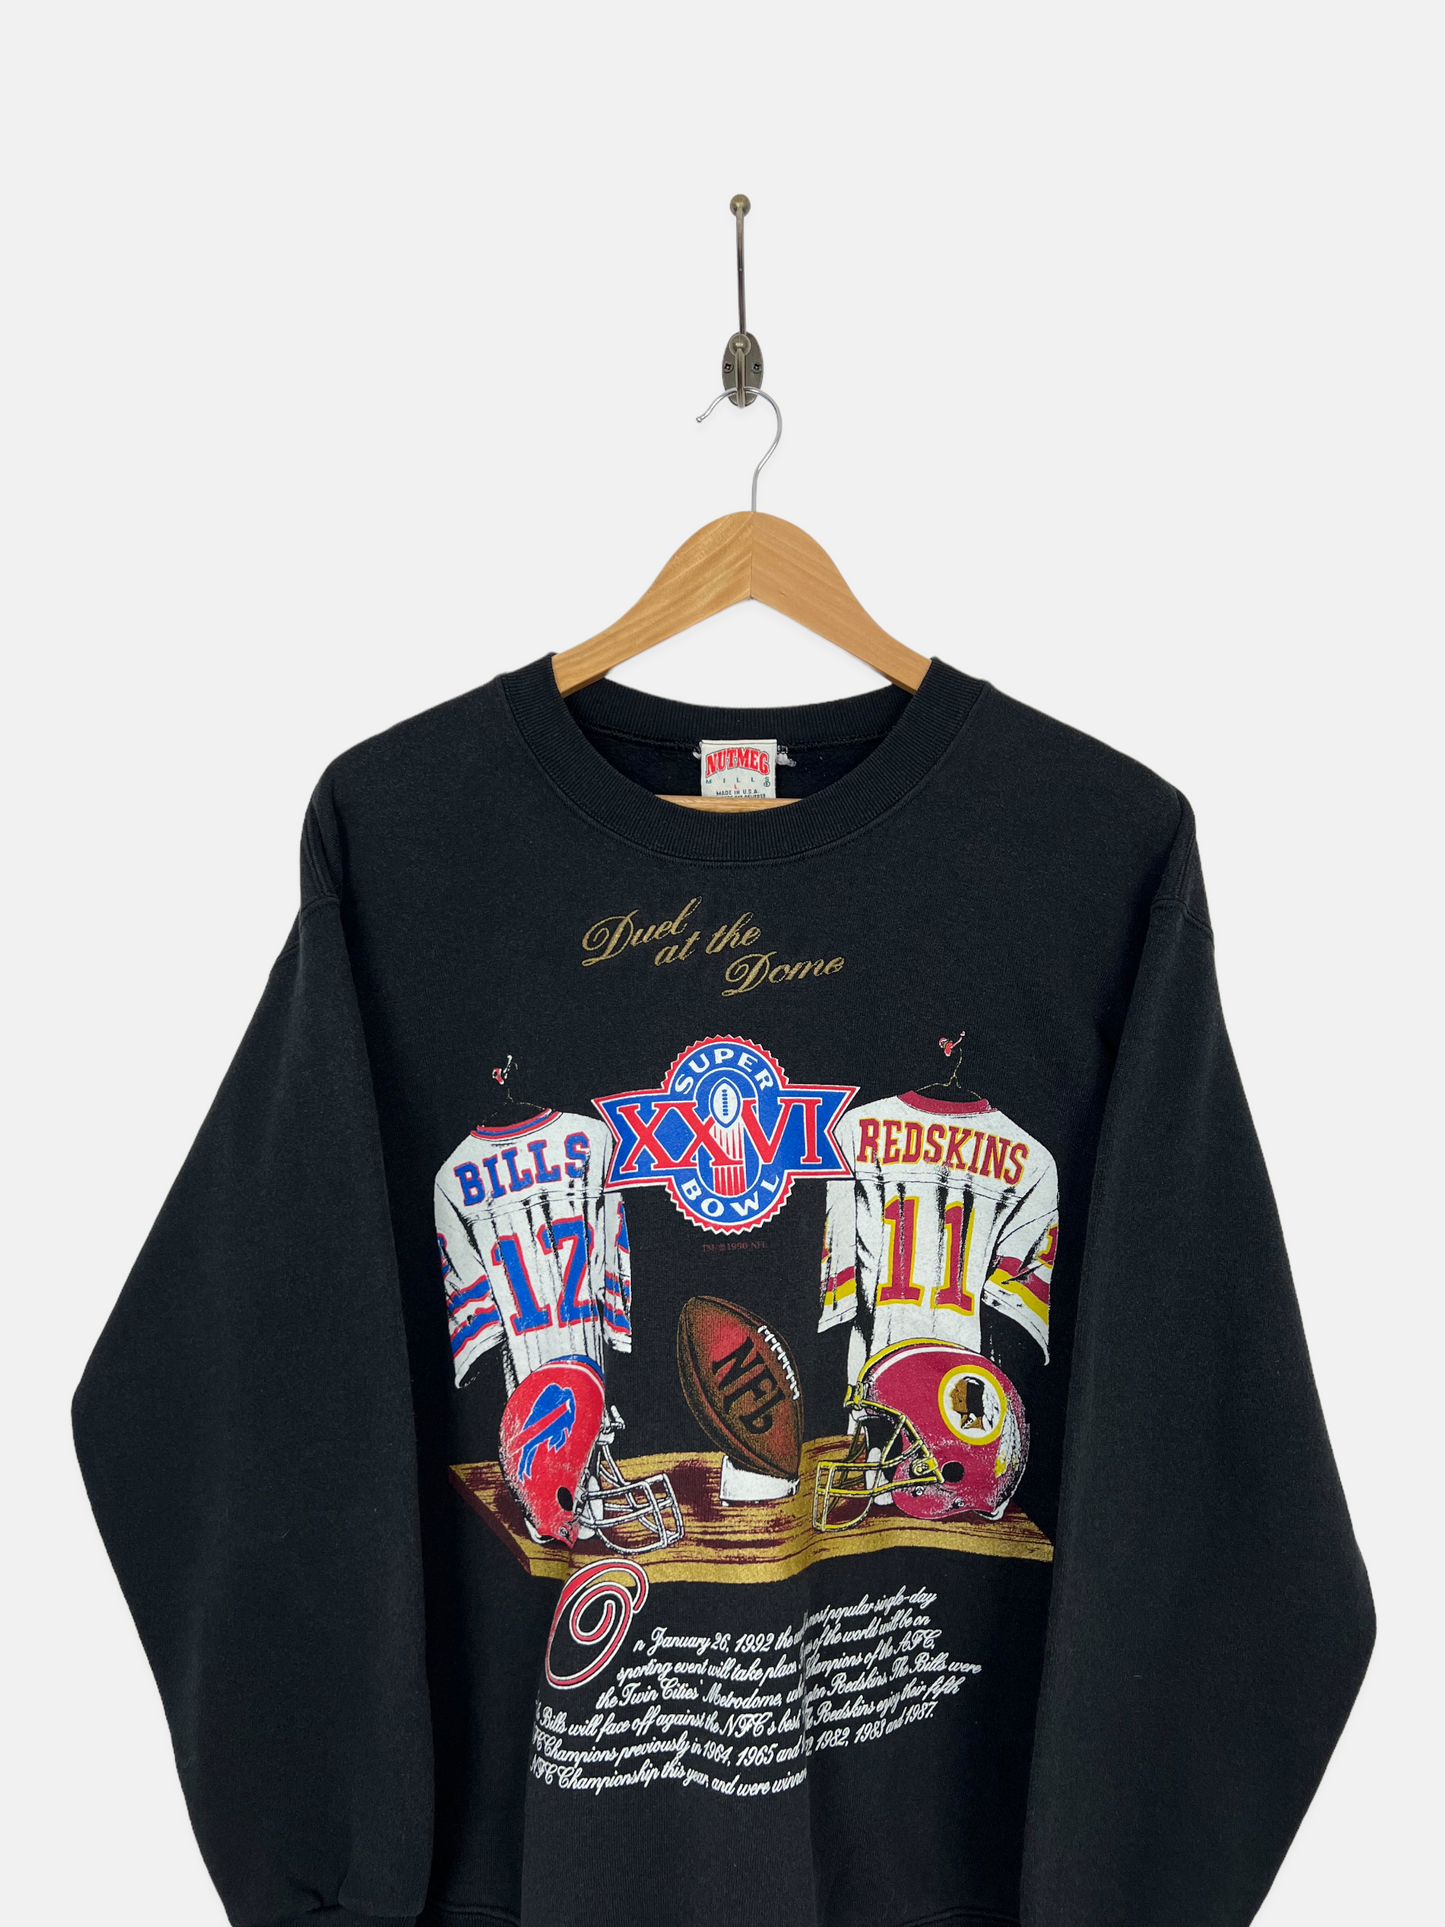 1992 NFL Super Bowl Redskins vs Bills USA Made Vintage Sweatshirt Size 10